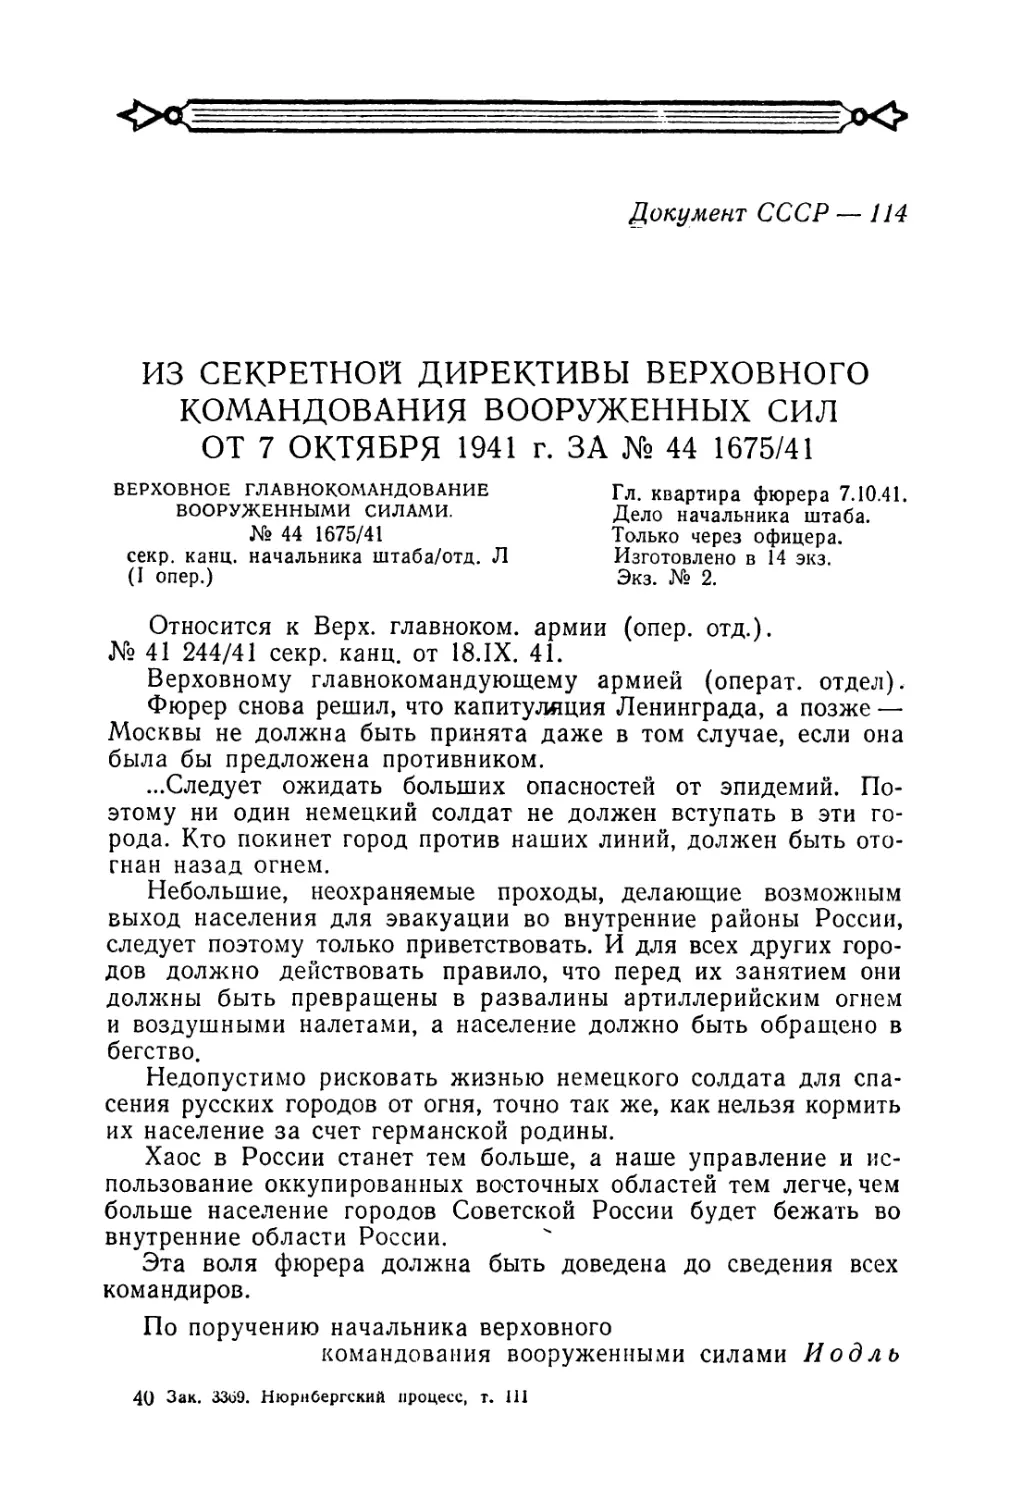 Секретная директива германского верховного командования о разрушении Москвы и Ленинграда